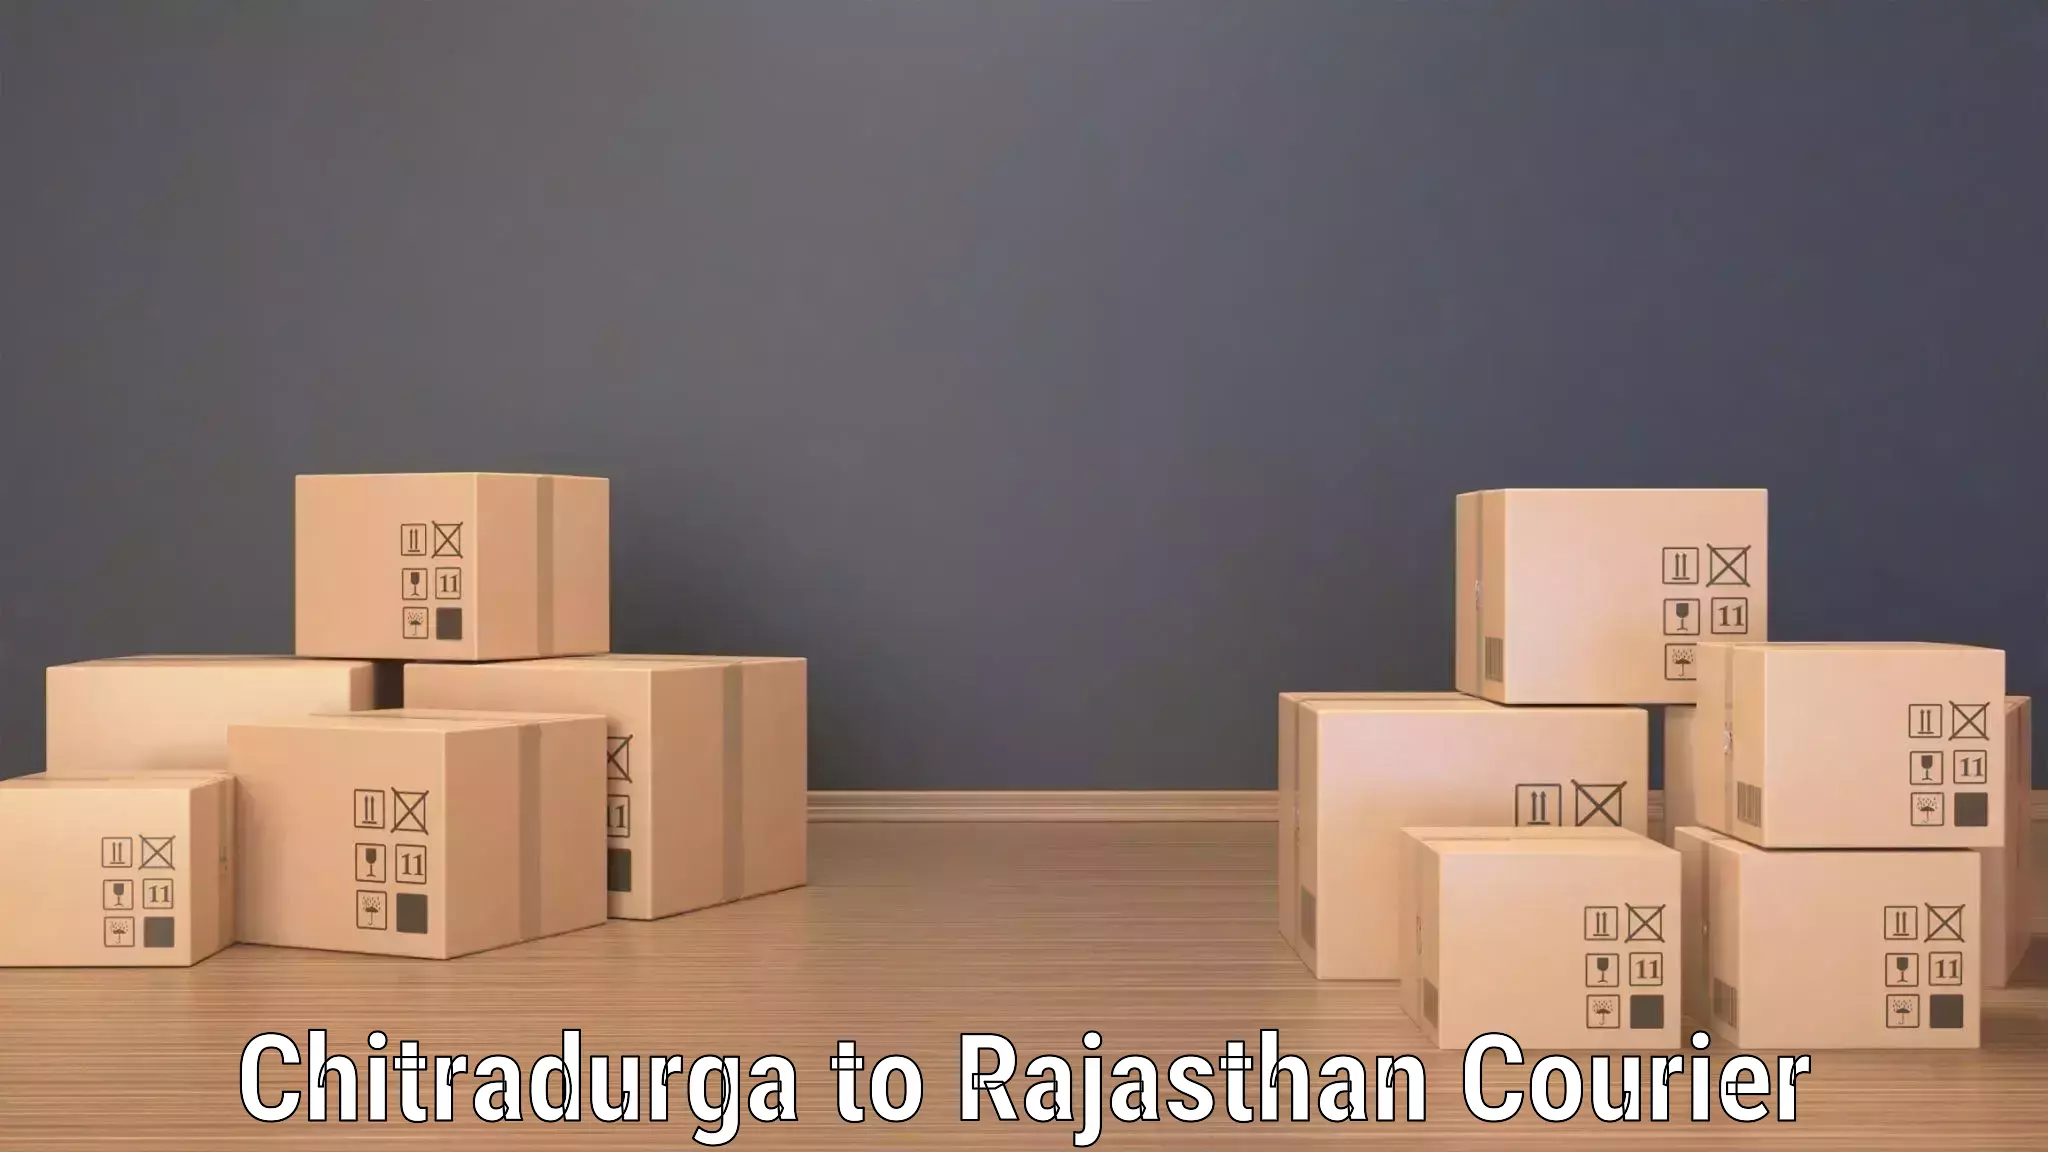 Courier service comparison Chitradurga to Suratgarh